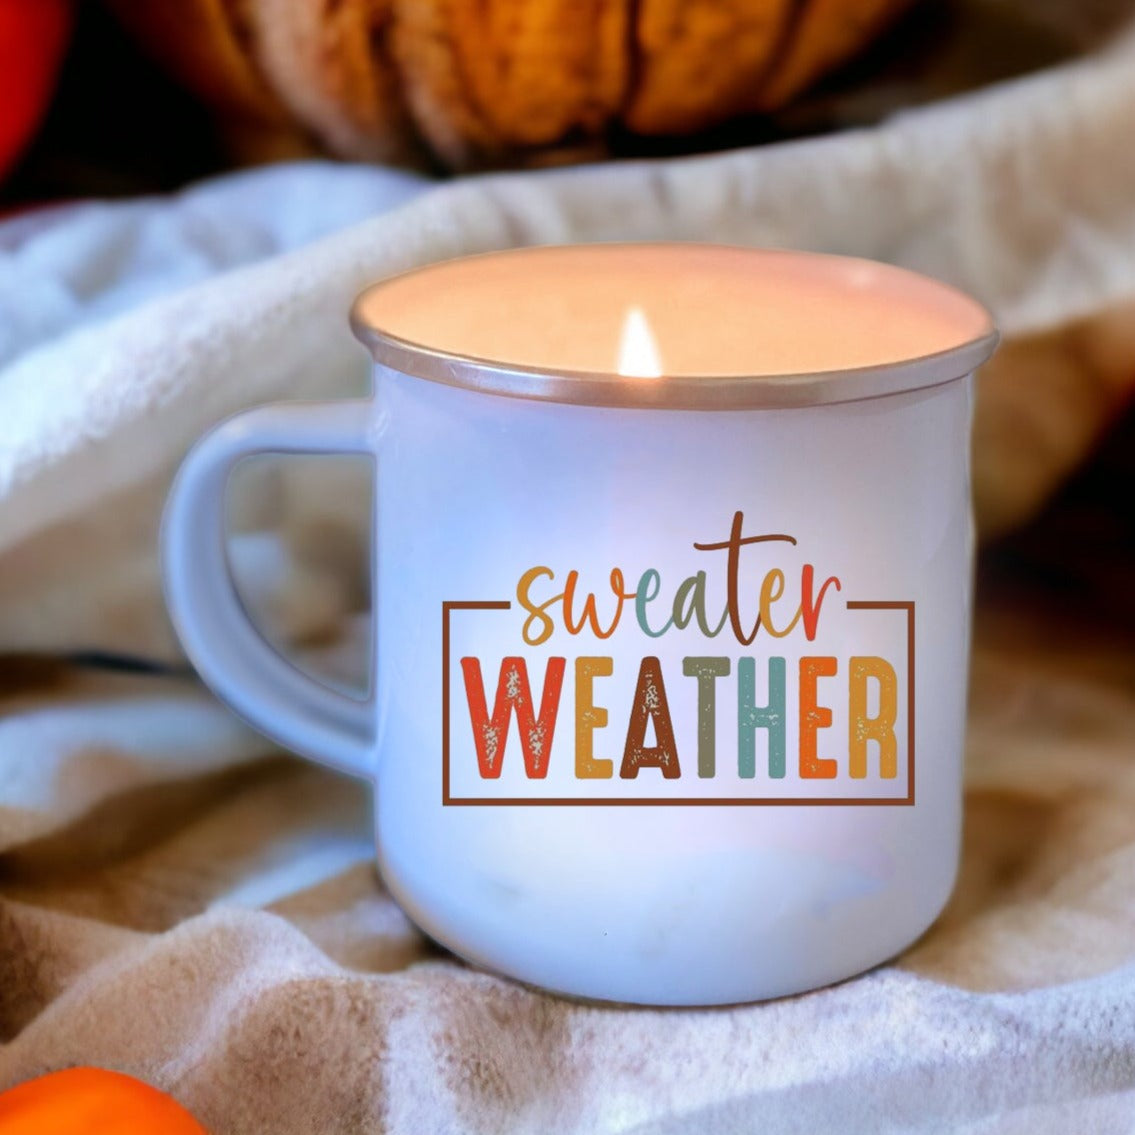 Sweater Weather Enamel Mug Candle